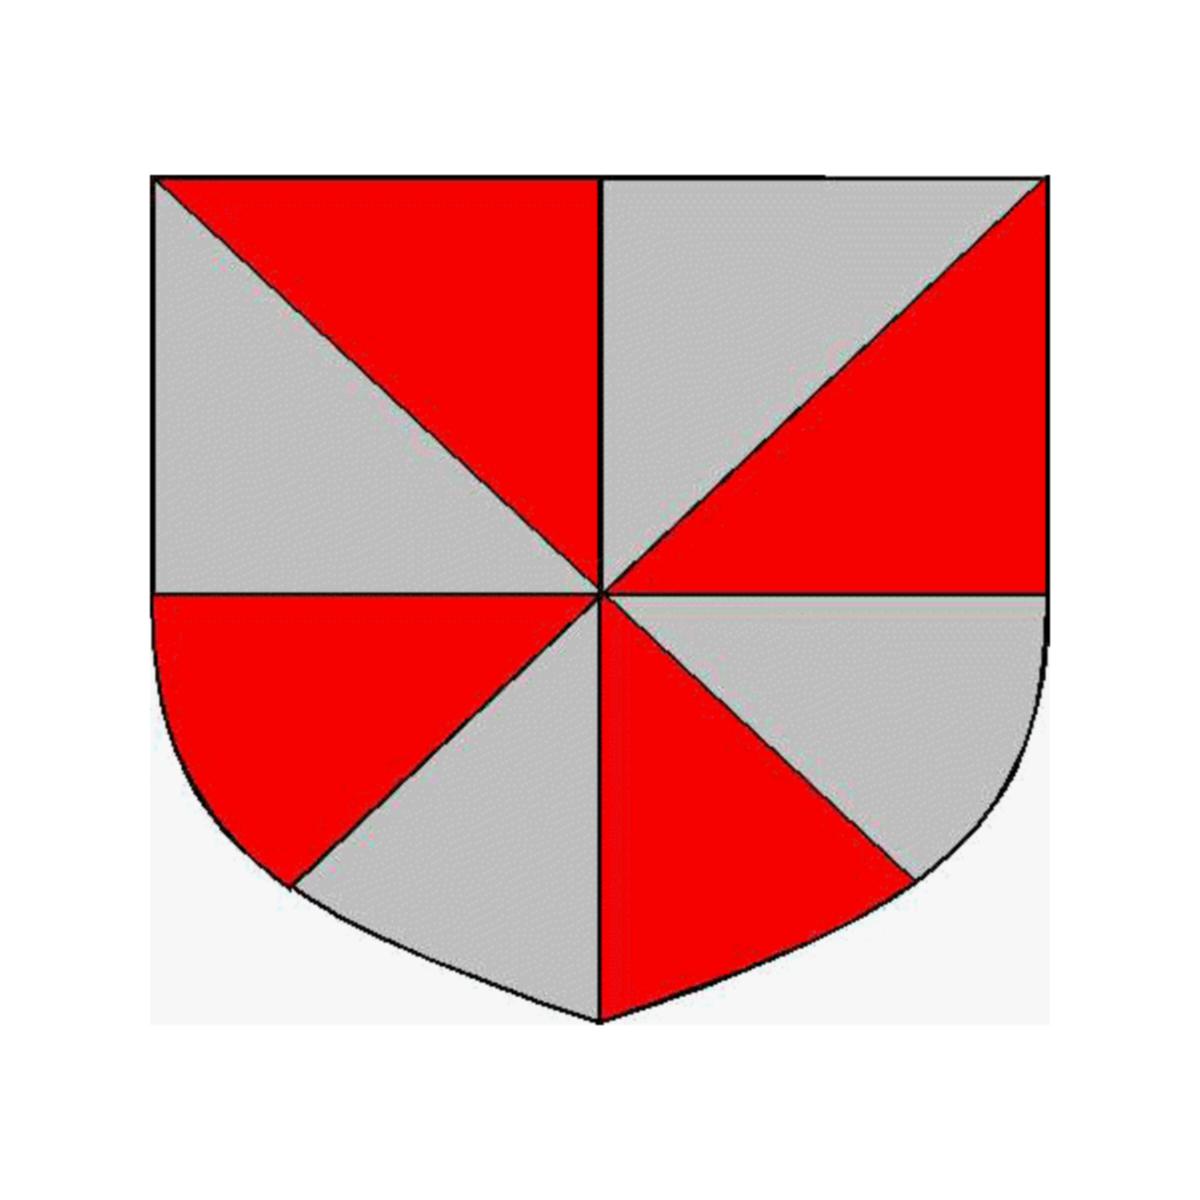 Wappen der Familie Amoretti